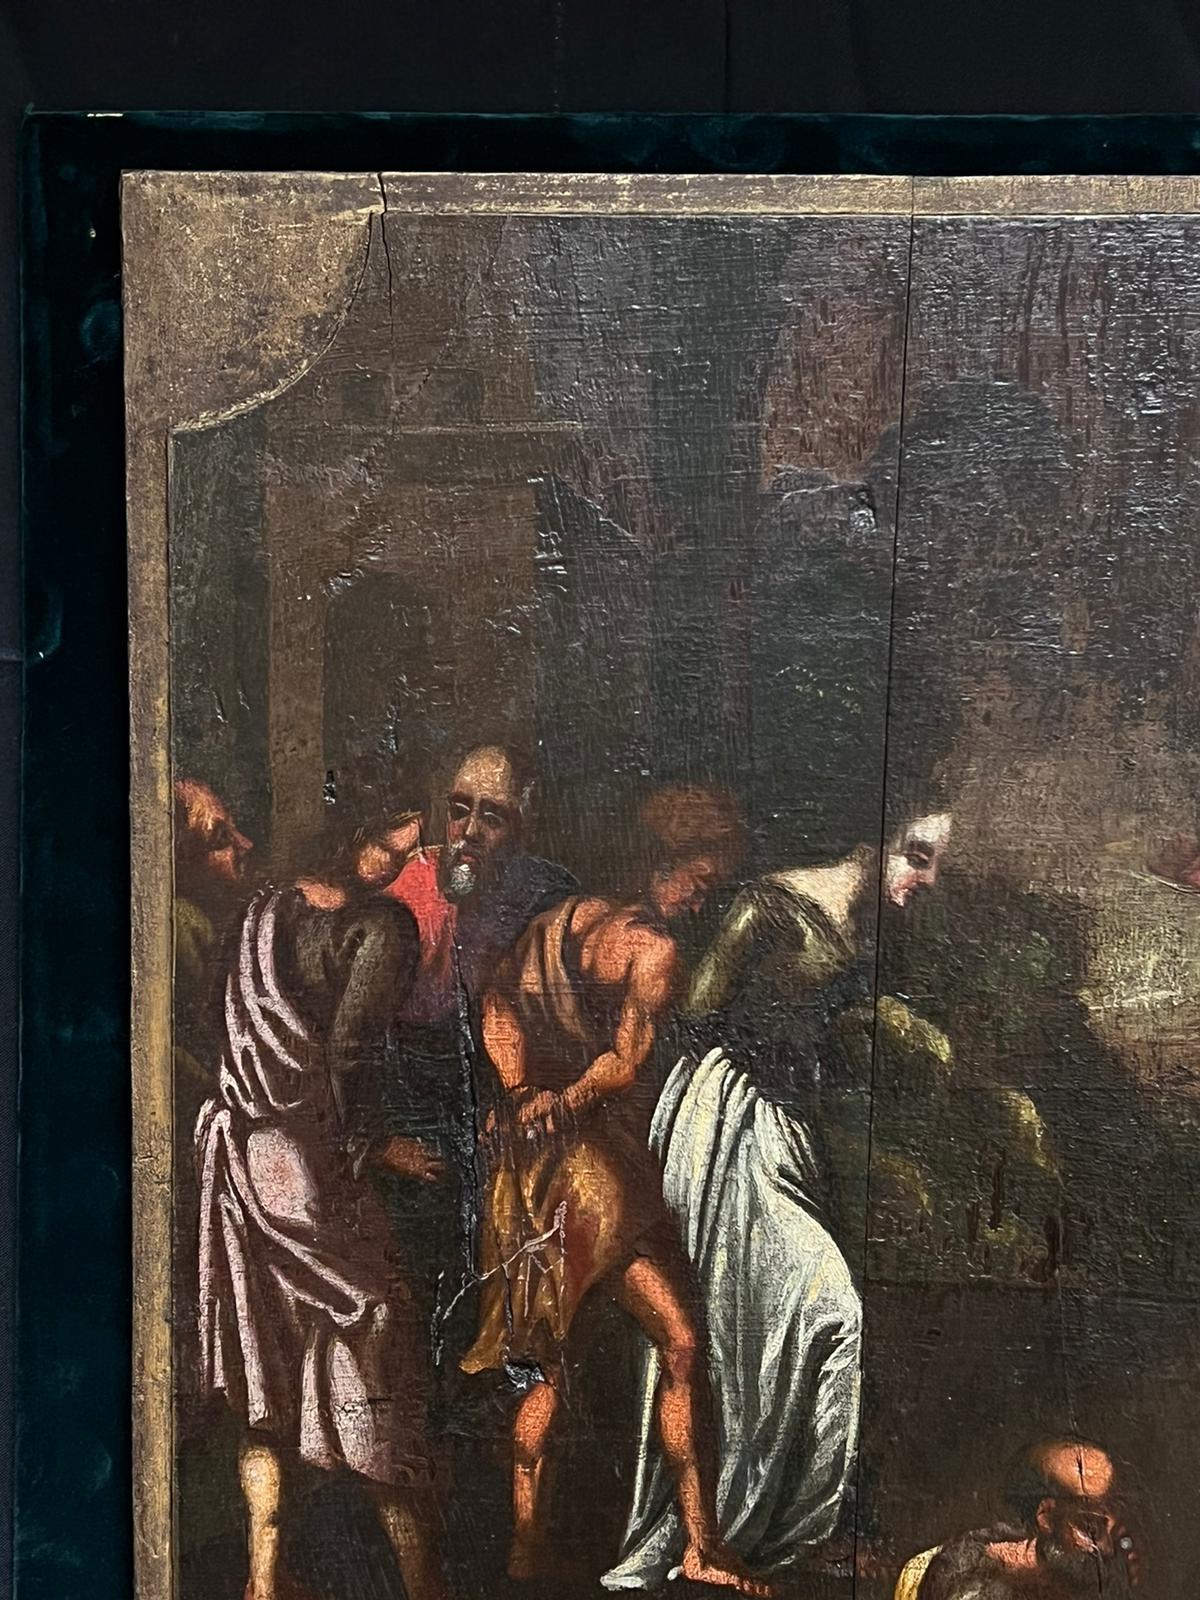 Biblische Figuren, große Versammlung um Christus?
Niederländischer Alter Meister, frühes 17. Jahrhundert
Ölgemälde auf Holzplatte, aufgeklebt auf Samtunterlage
Samtbrett: 27 x 29 Zoll
Brett: 25,5 x 26 Zoll
Provenienz: Privatsammlung,